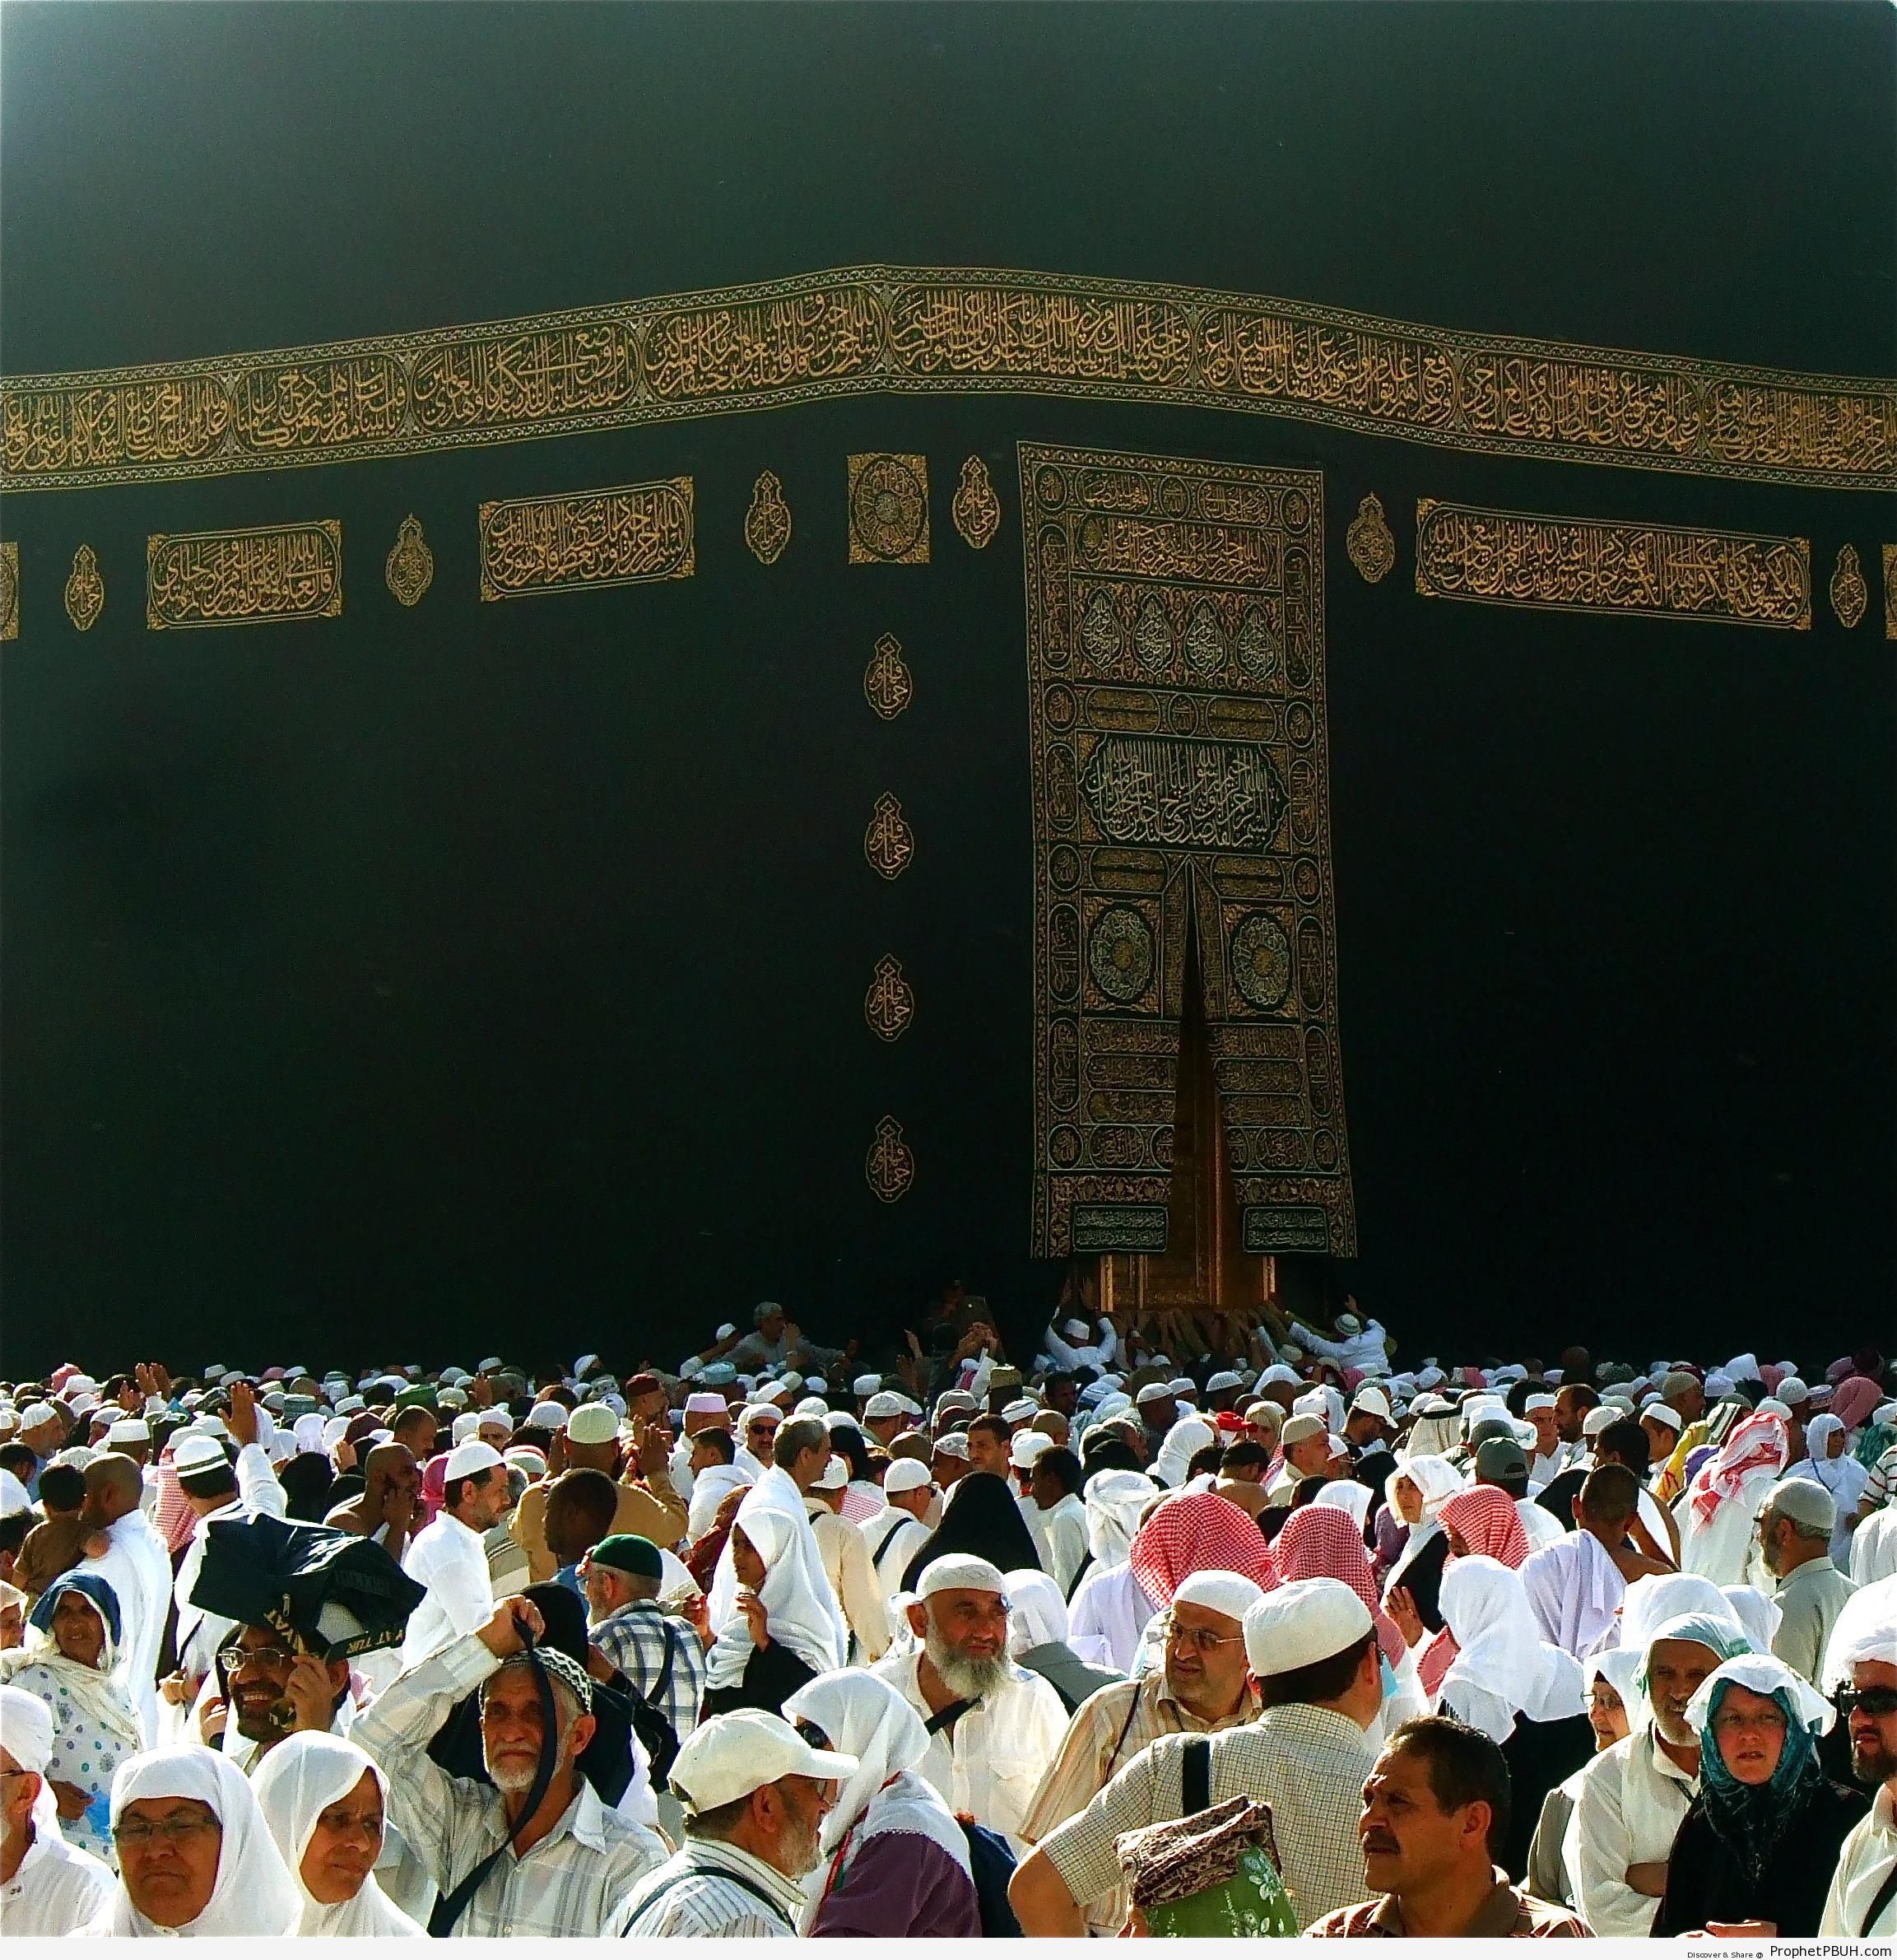 People by the Kaaba - al-Masjid al-Haram in Makkah, Saudi Arabia -Picture